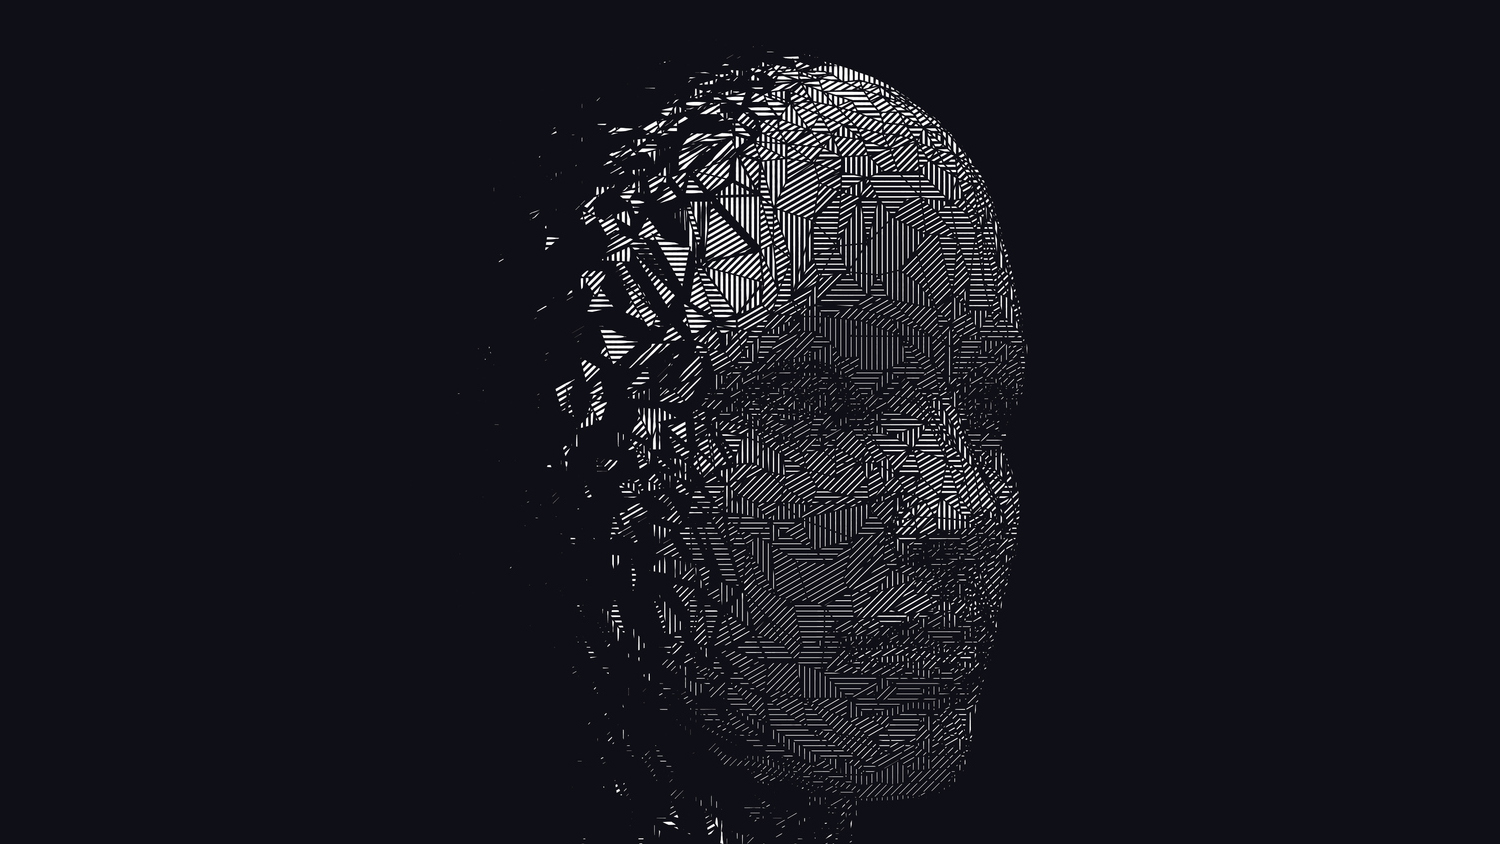 Et AI-generert ansikt som illustrerer skyggesiden og problemene ved AI